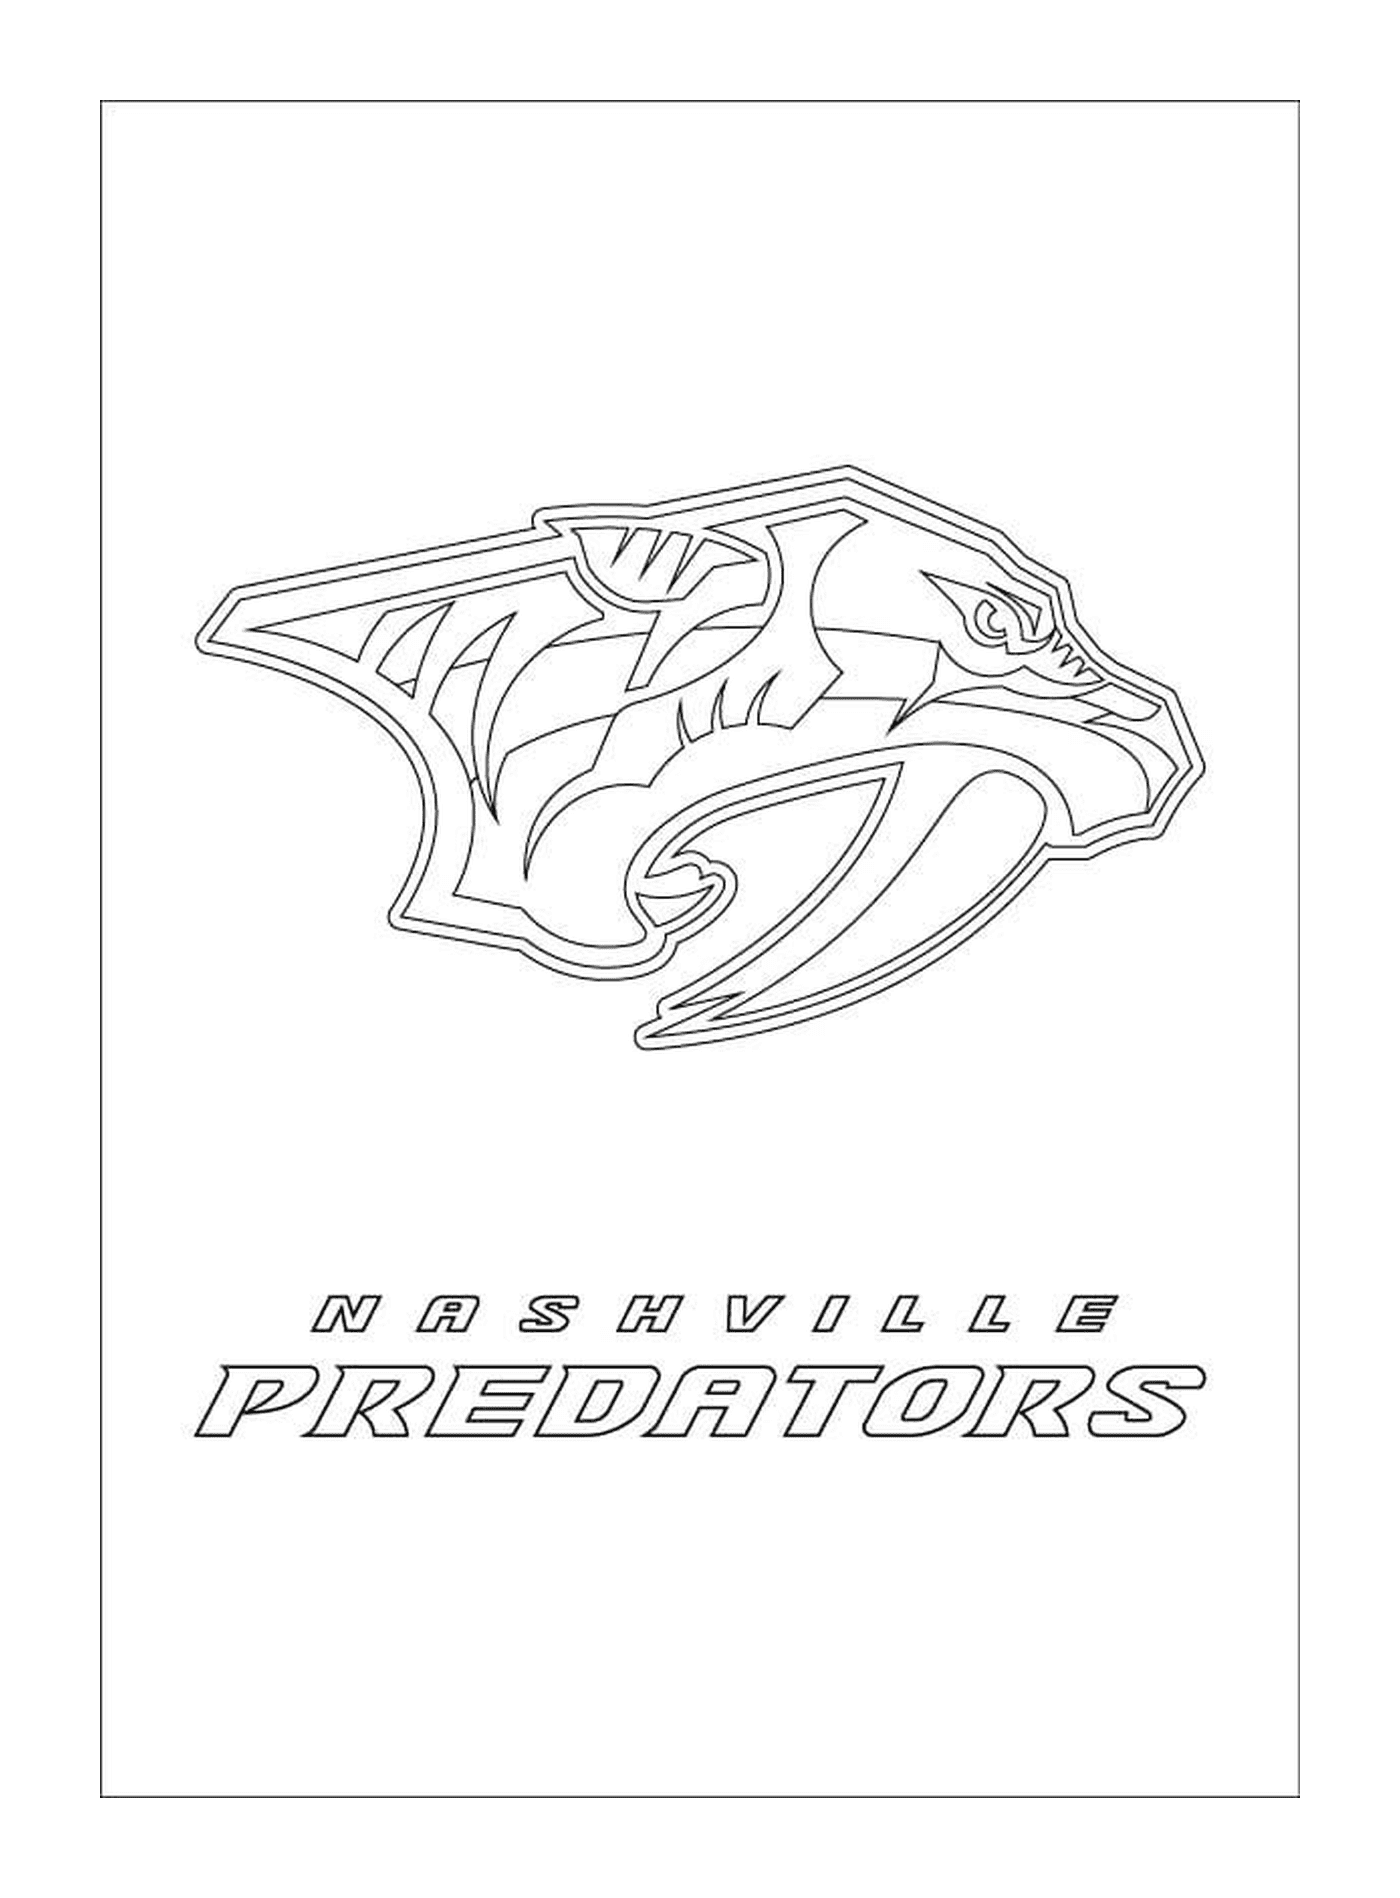  Logo dei predatori di Nashville 